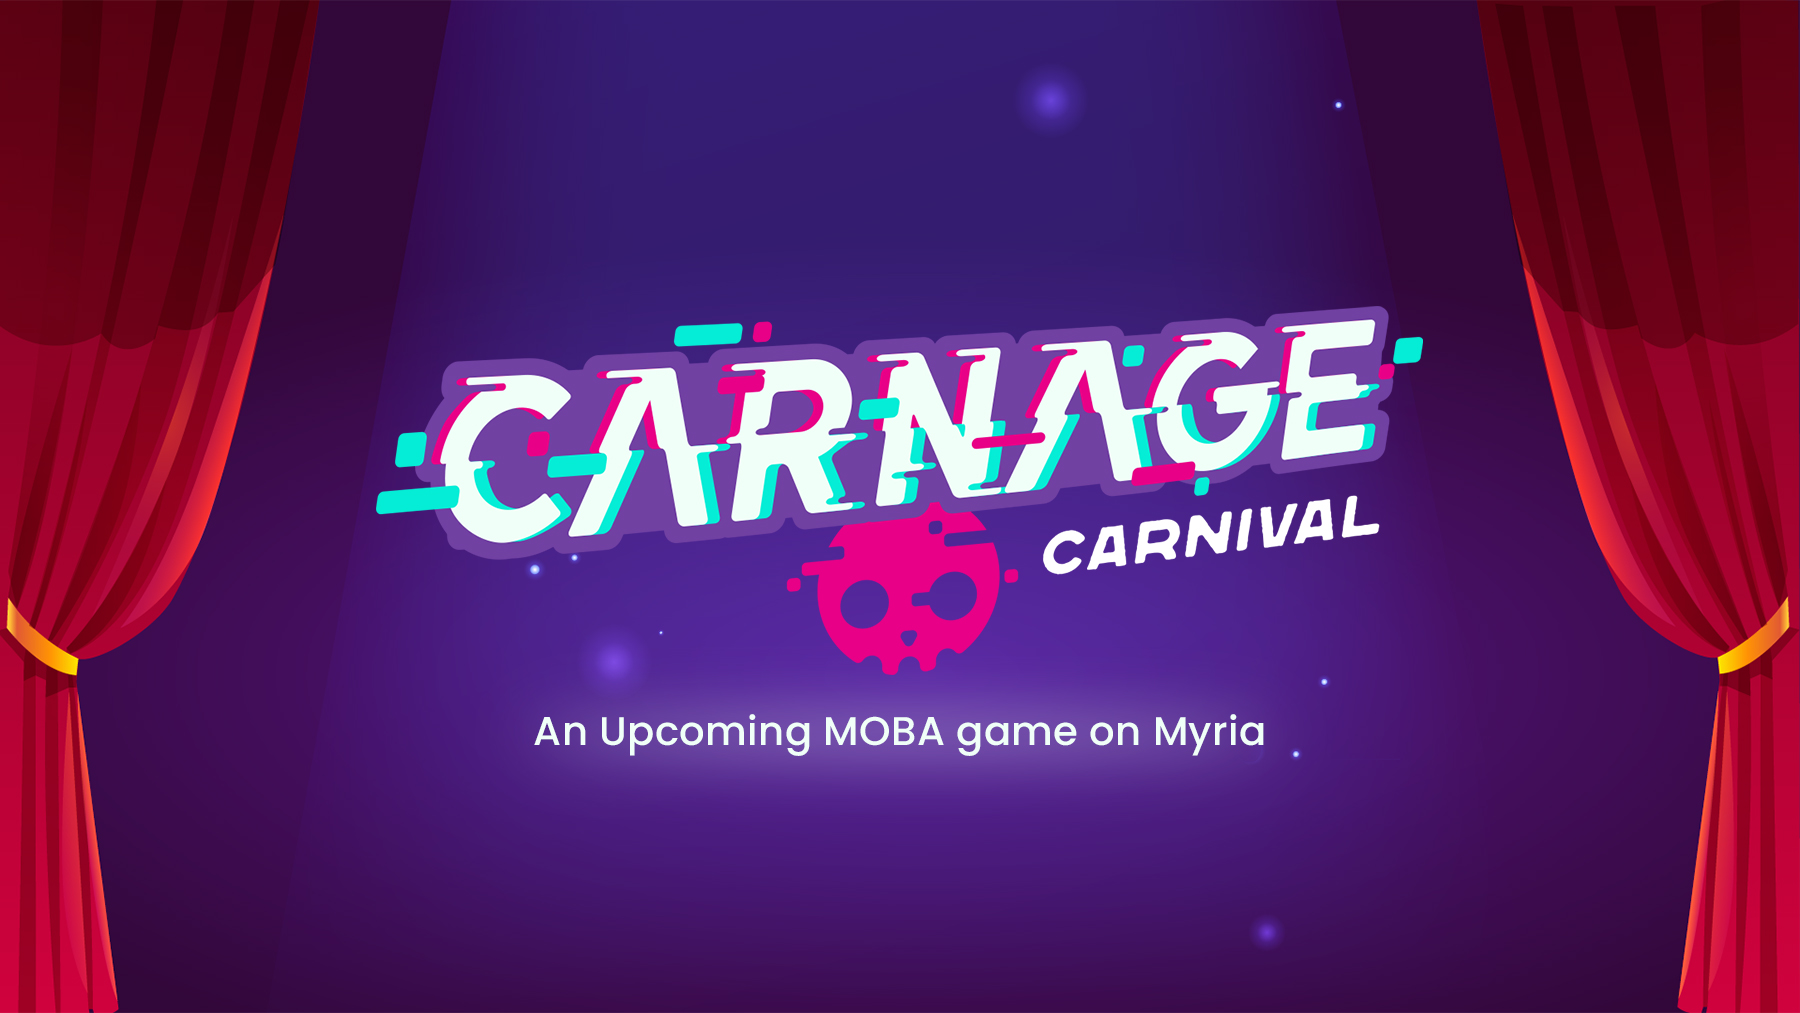 Presentamos Carnage Carnival, un próximo juego F2P MOBA en Myria